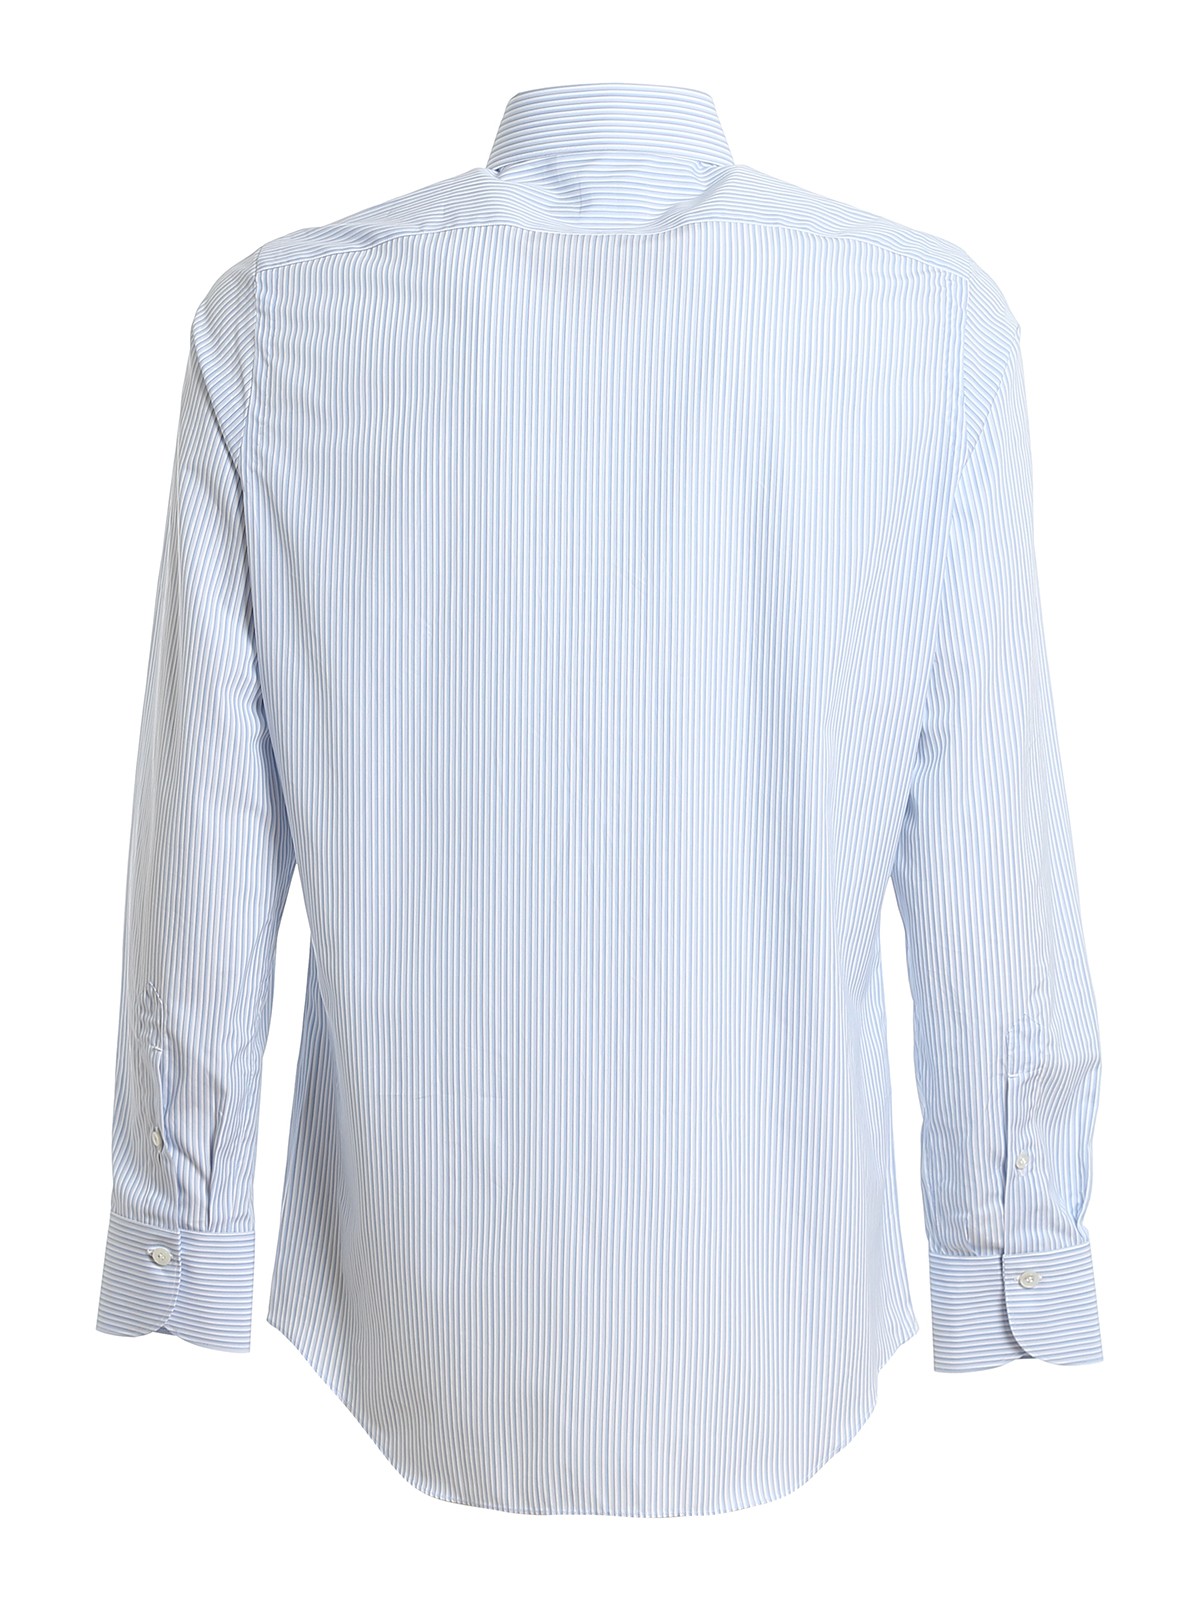 Shirts Finamore 1925 - Striped Giza 45 cotton shirt - C0239MILANO21